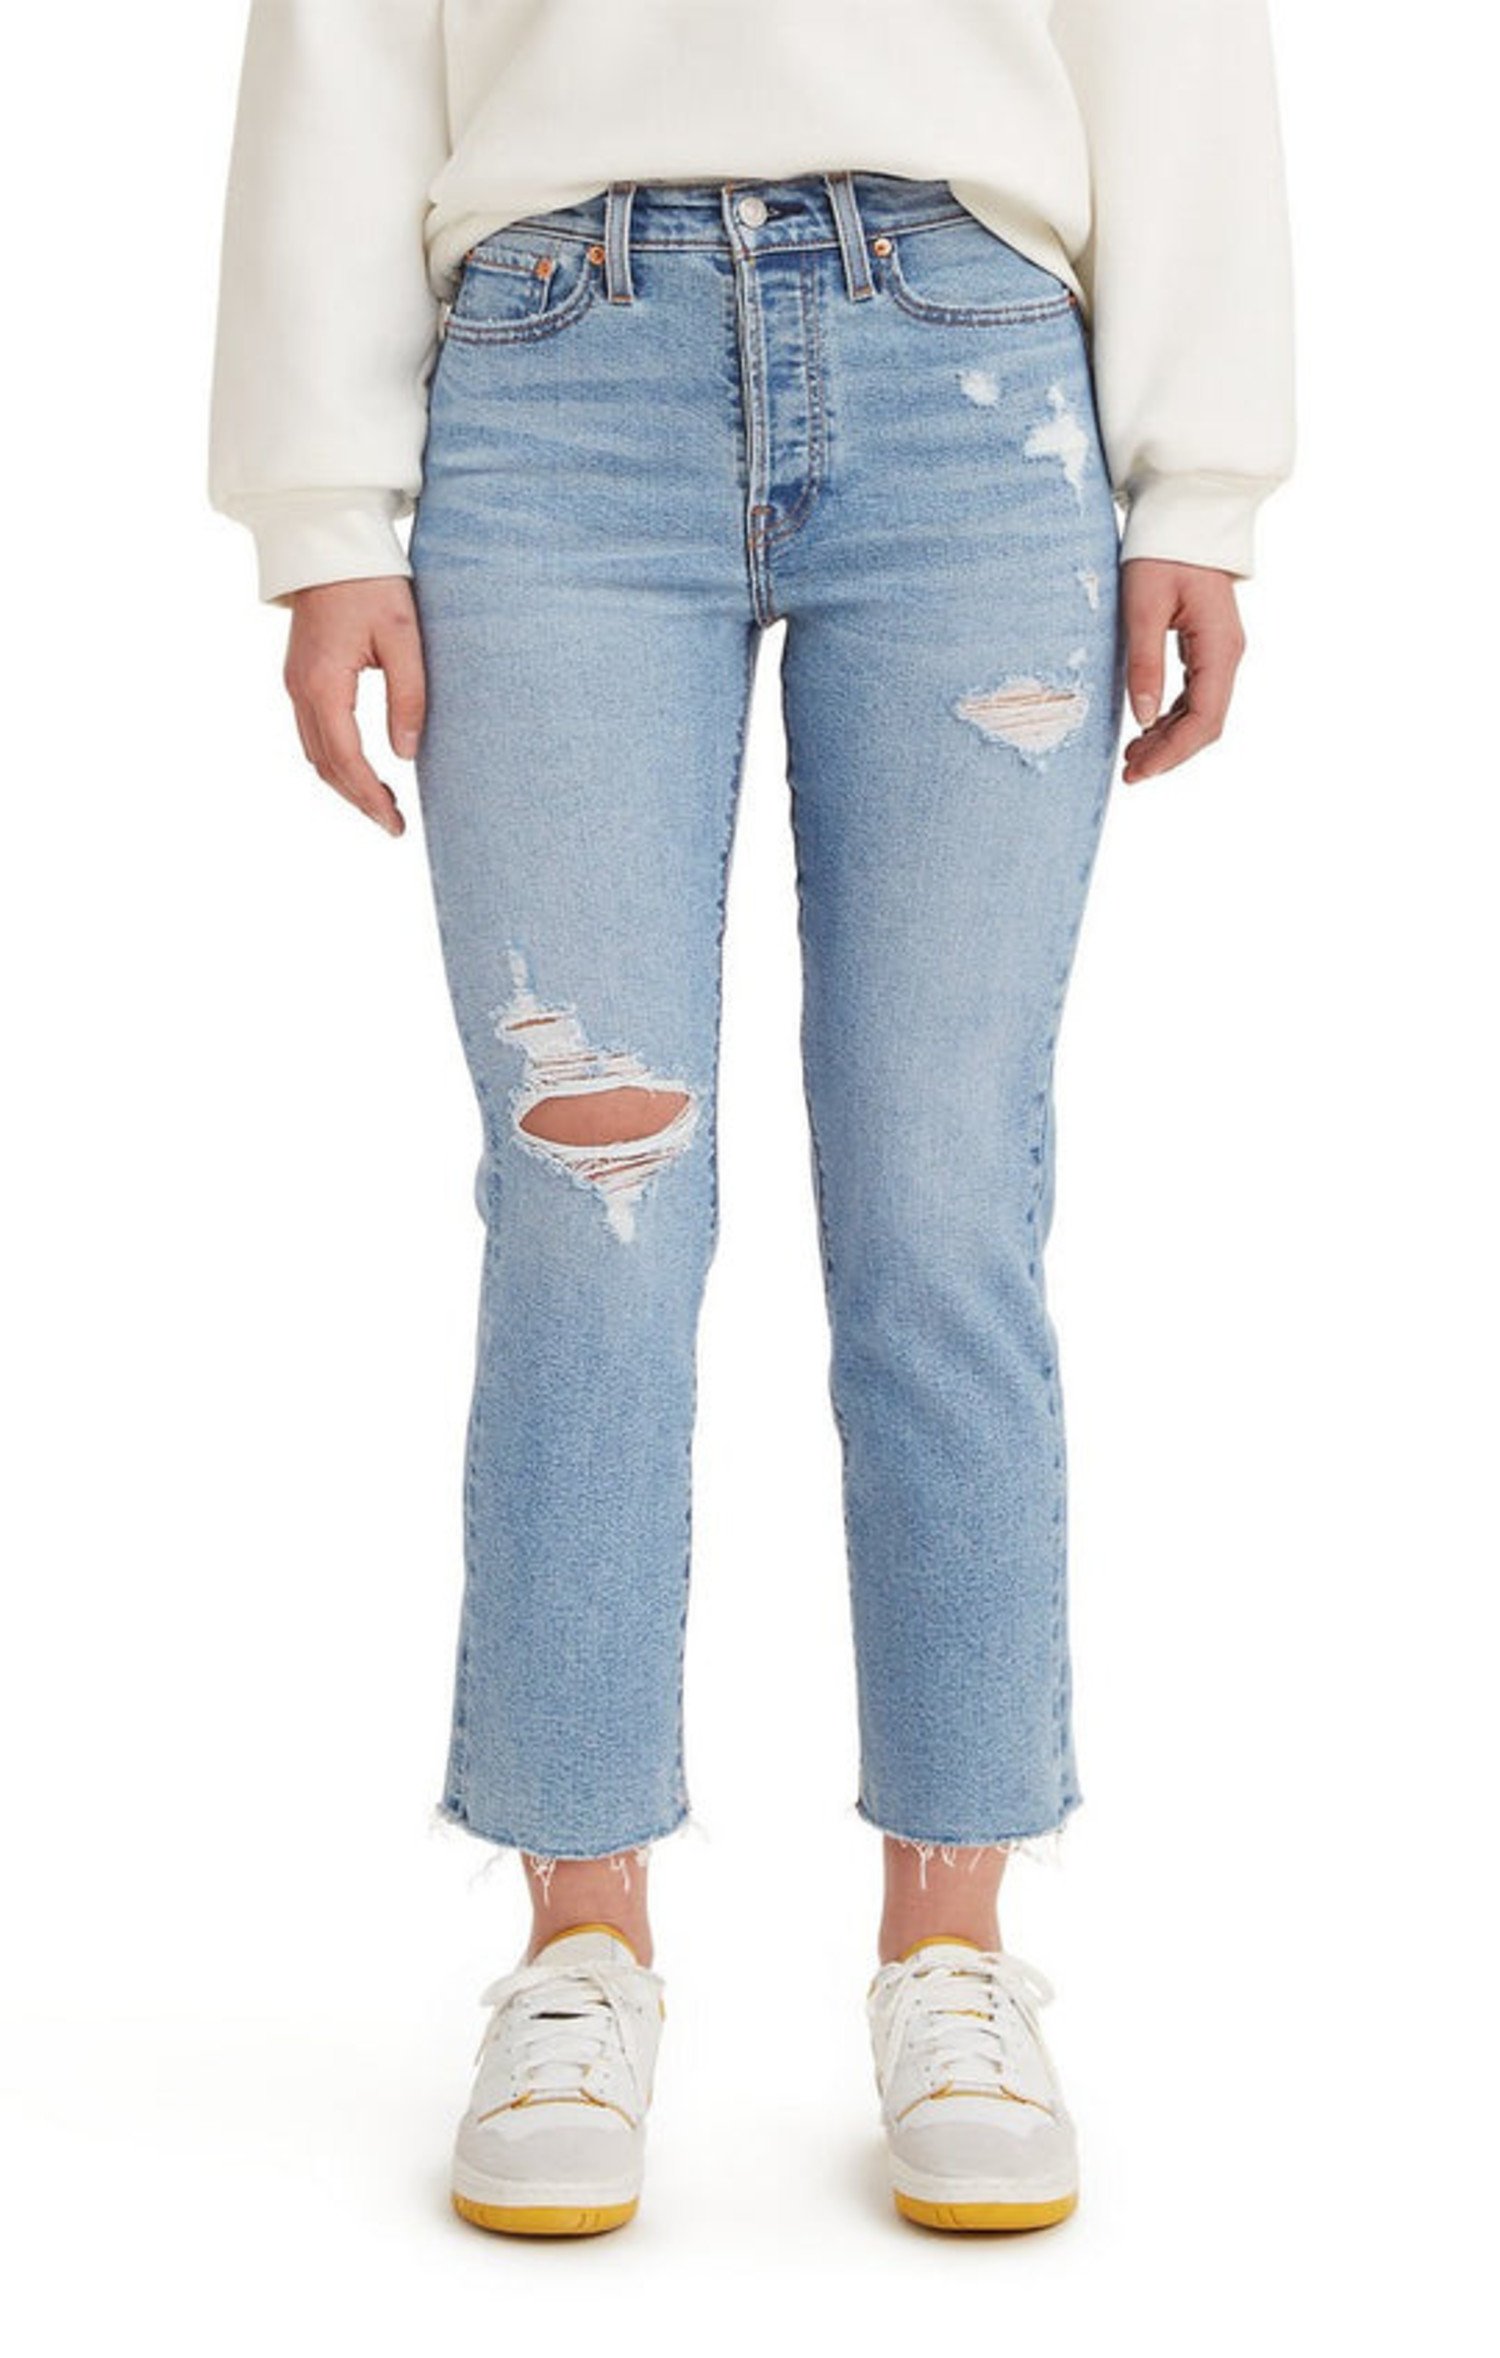 Levi's Wedgie Jeans - Shop on Pinterest